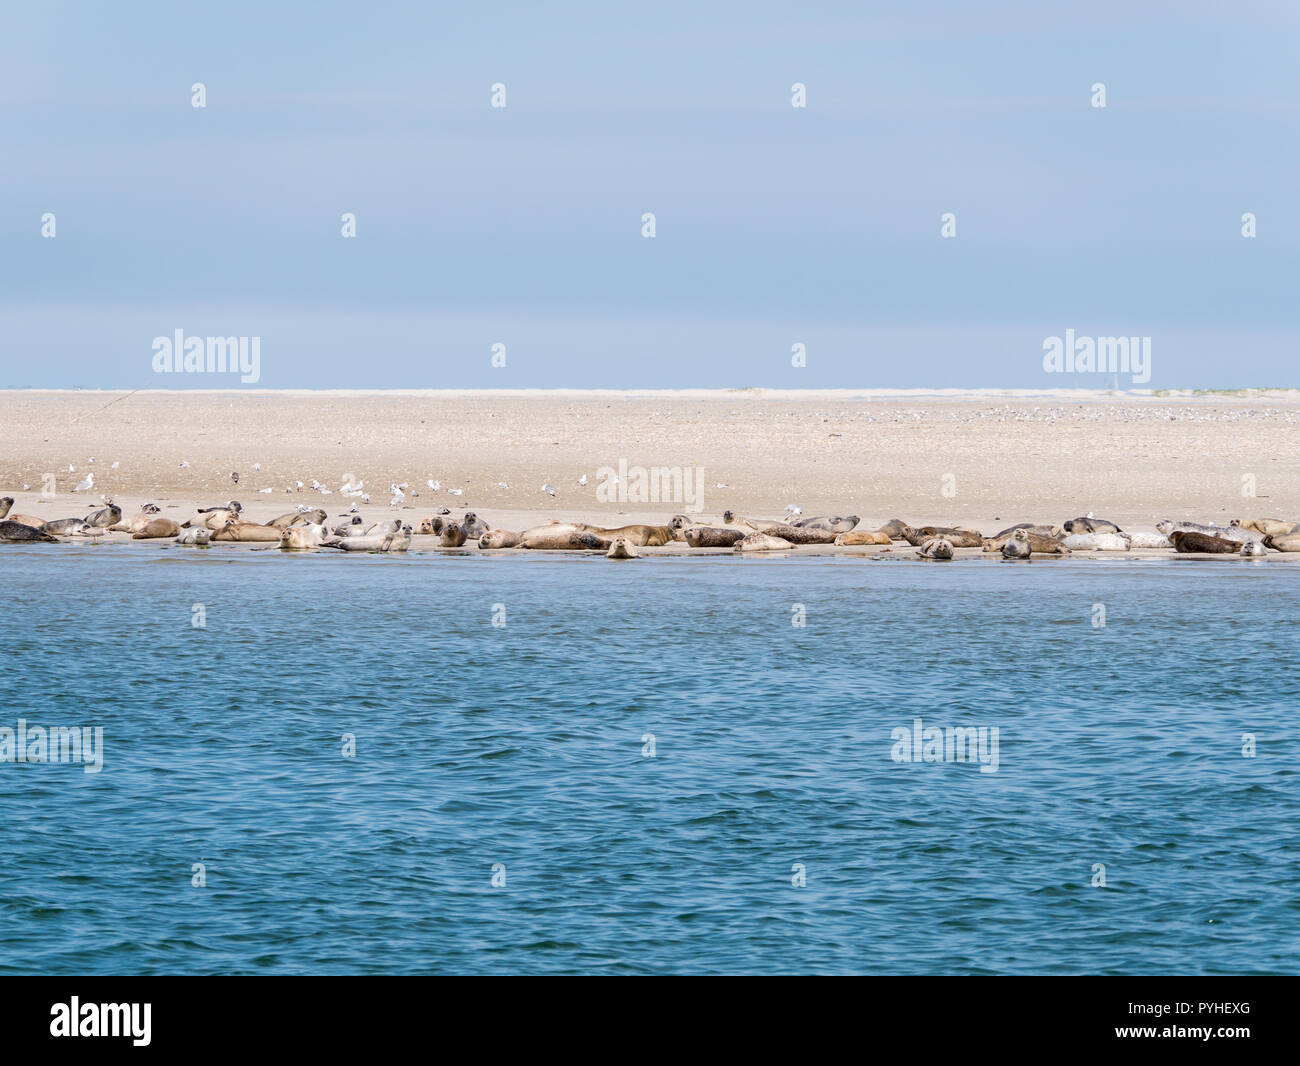 Les phoques communs et gris se reposant sur le sable appartements de RIF dans les marées, la mer de Wadden Pays-Bas Banque D'Images